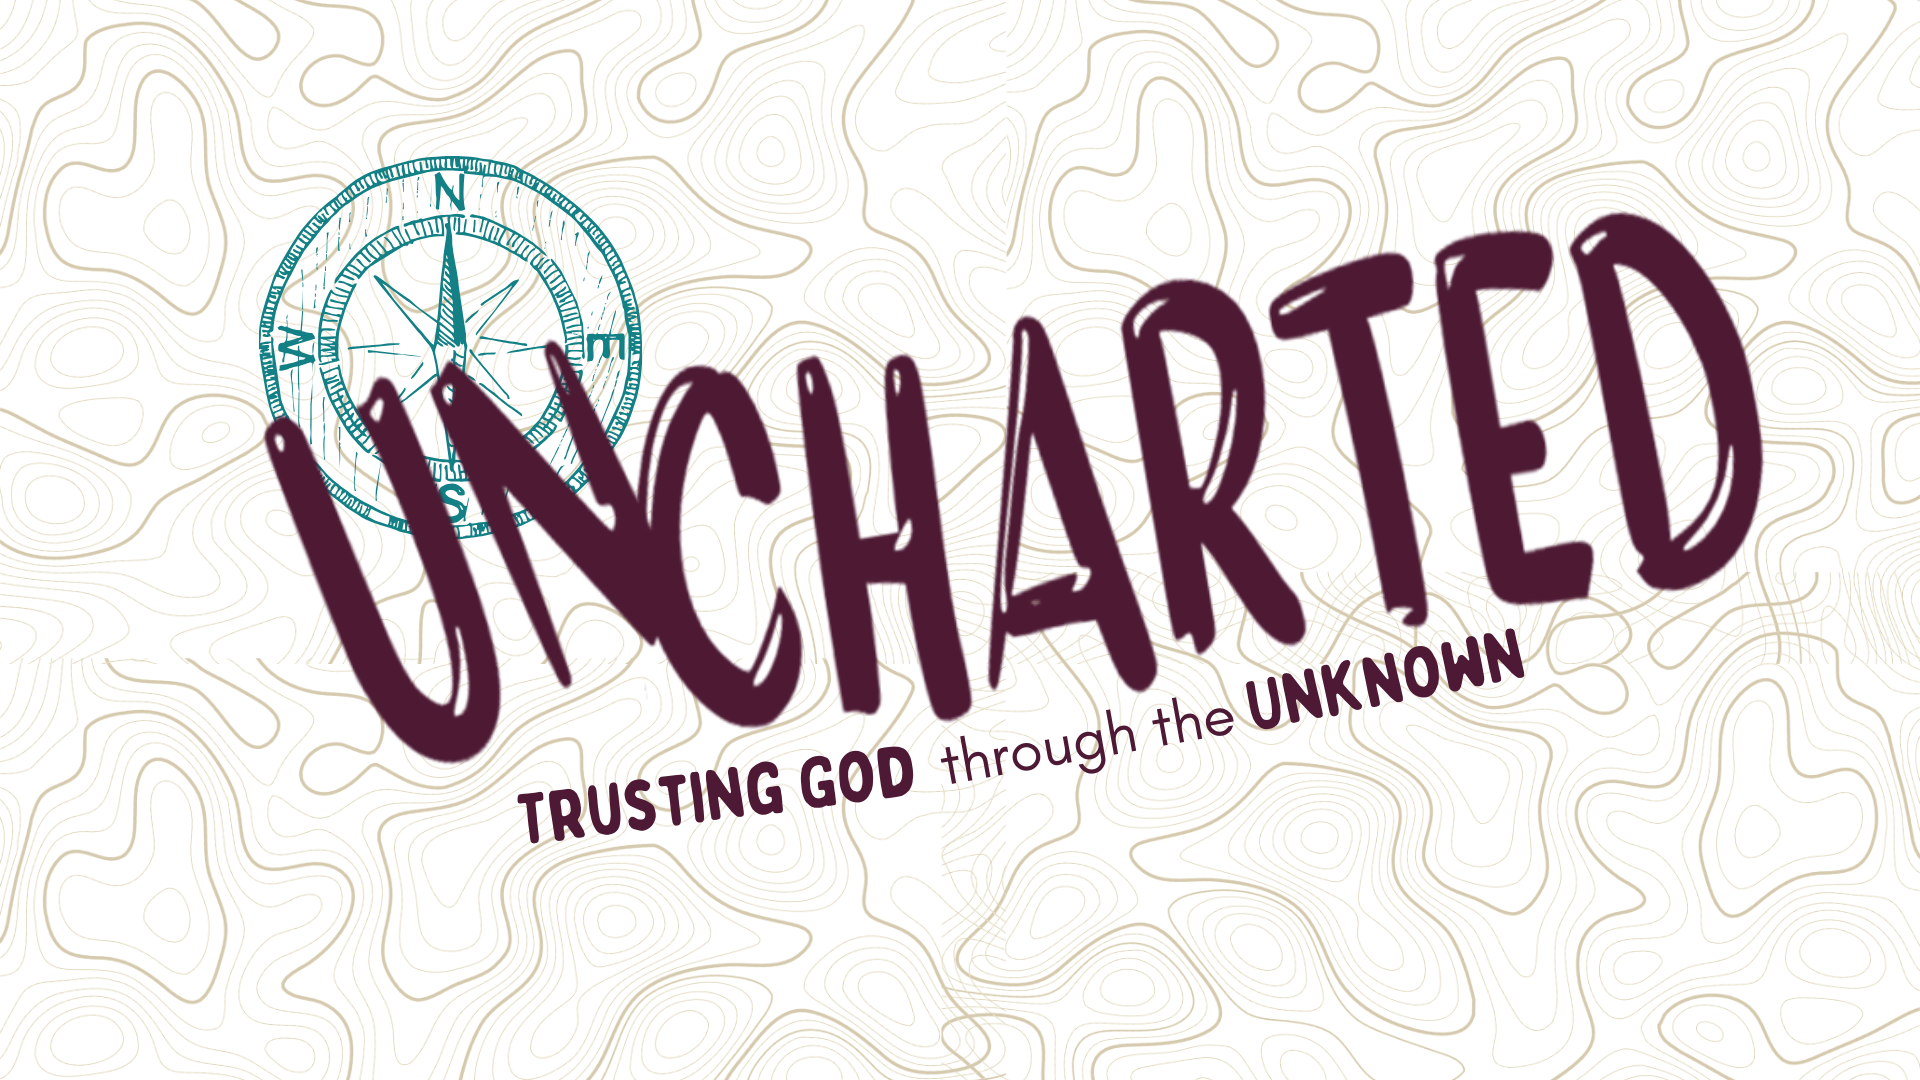 Uncharted logo